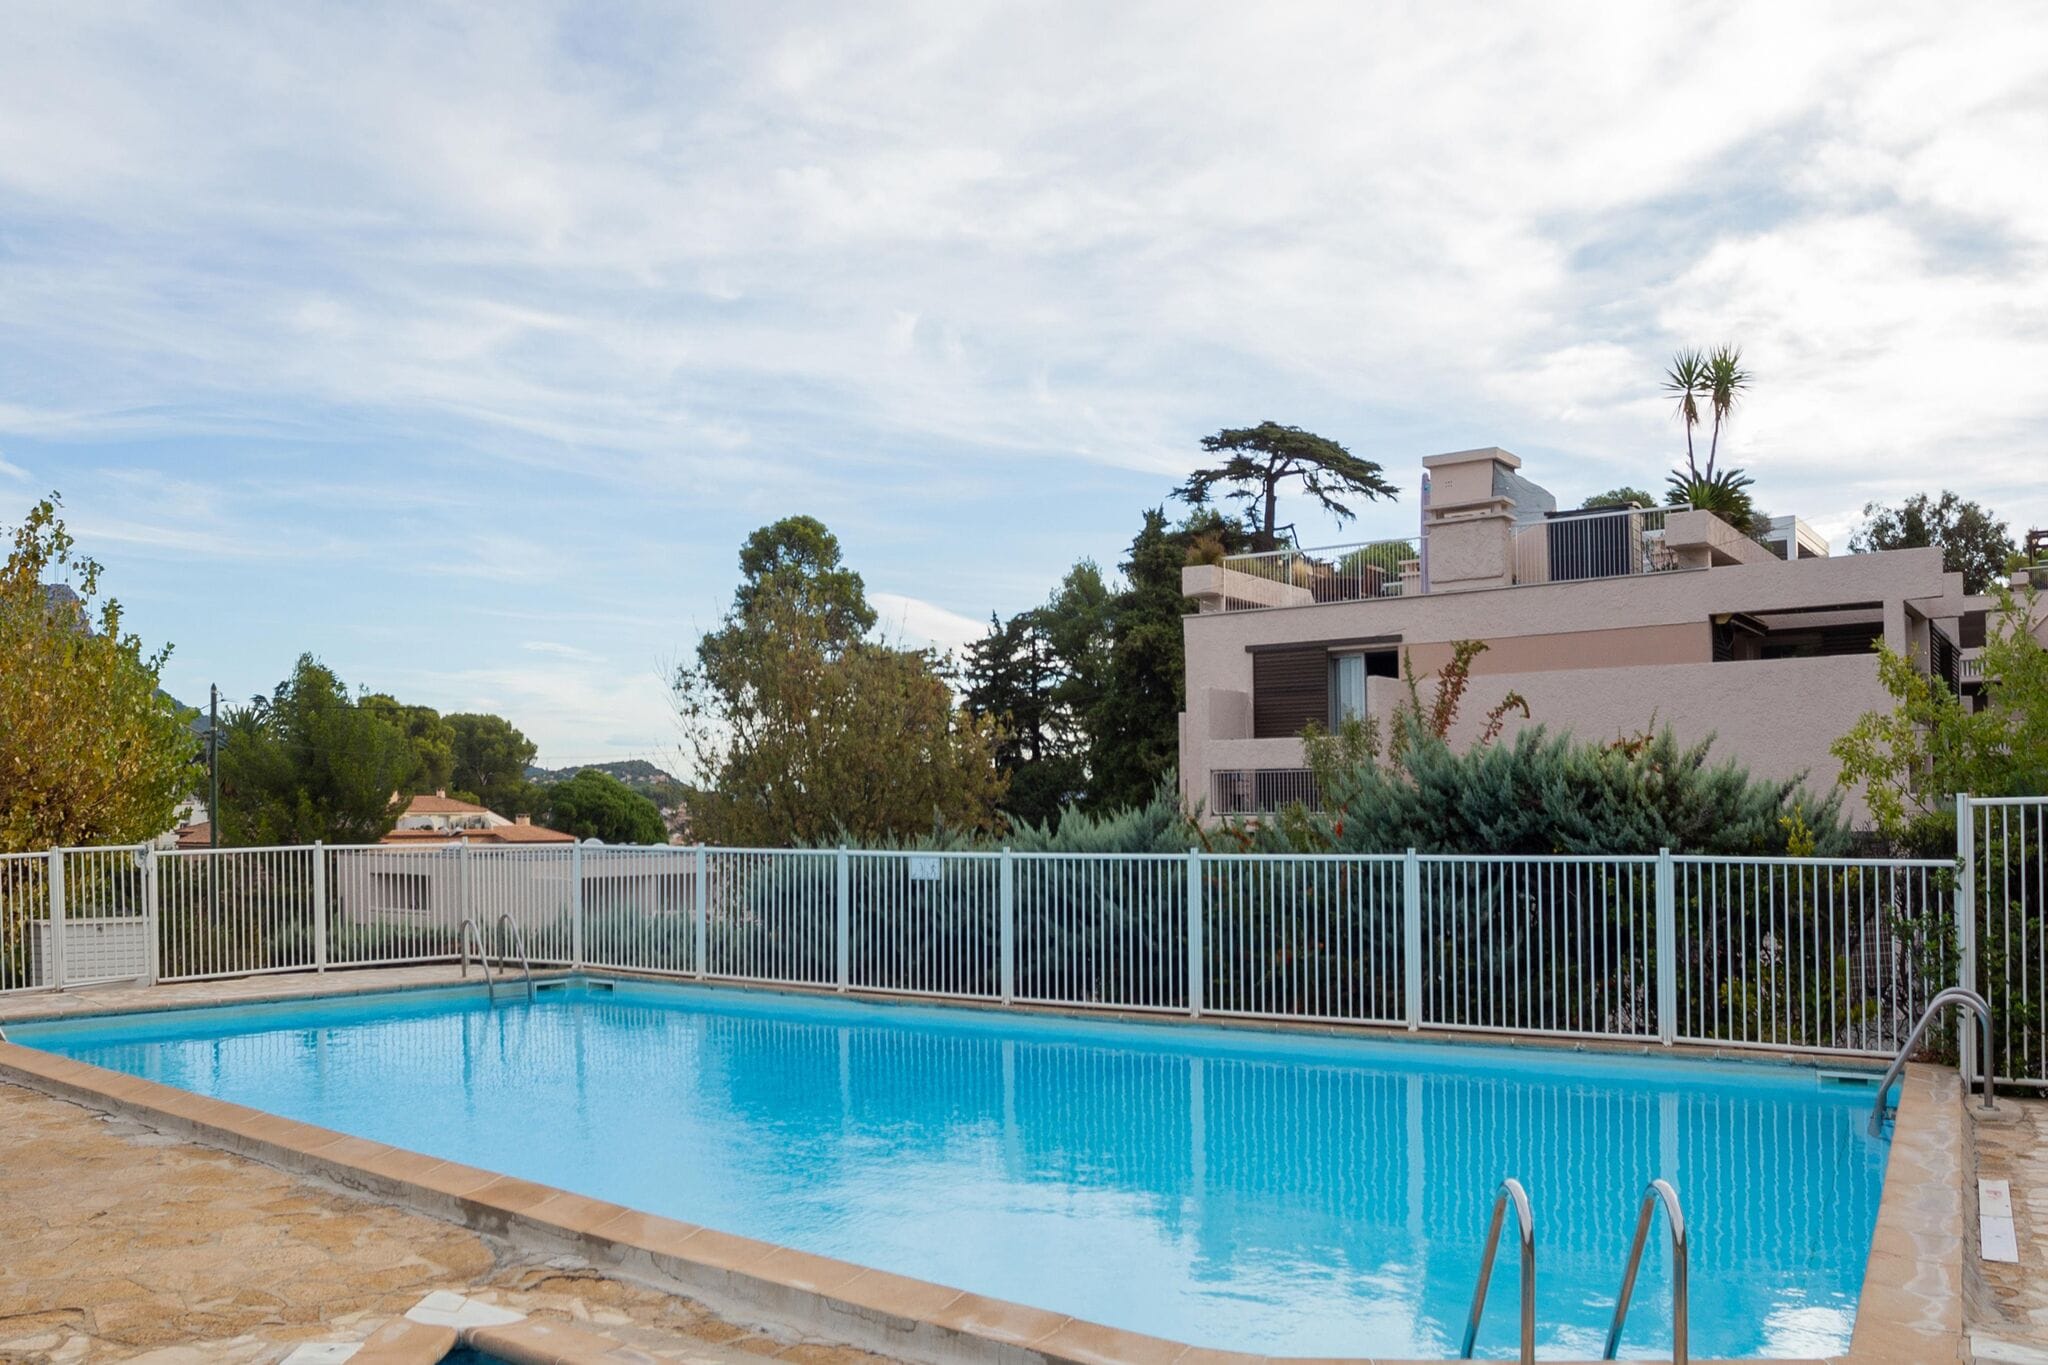 

Maison de vacances élégante avec piscine, jardin, court de tennis